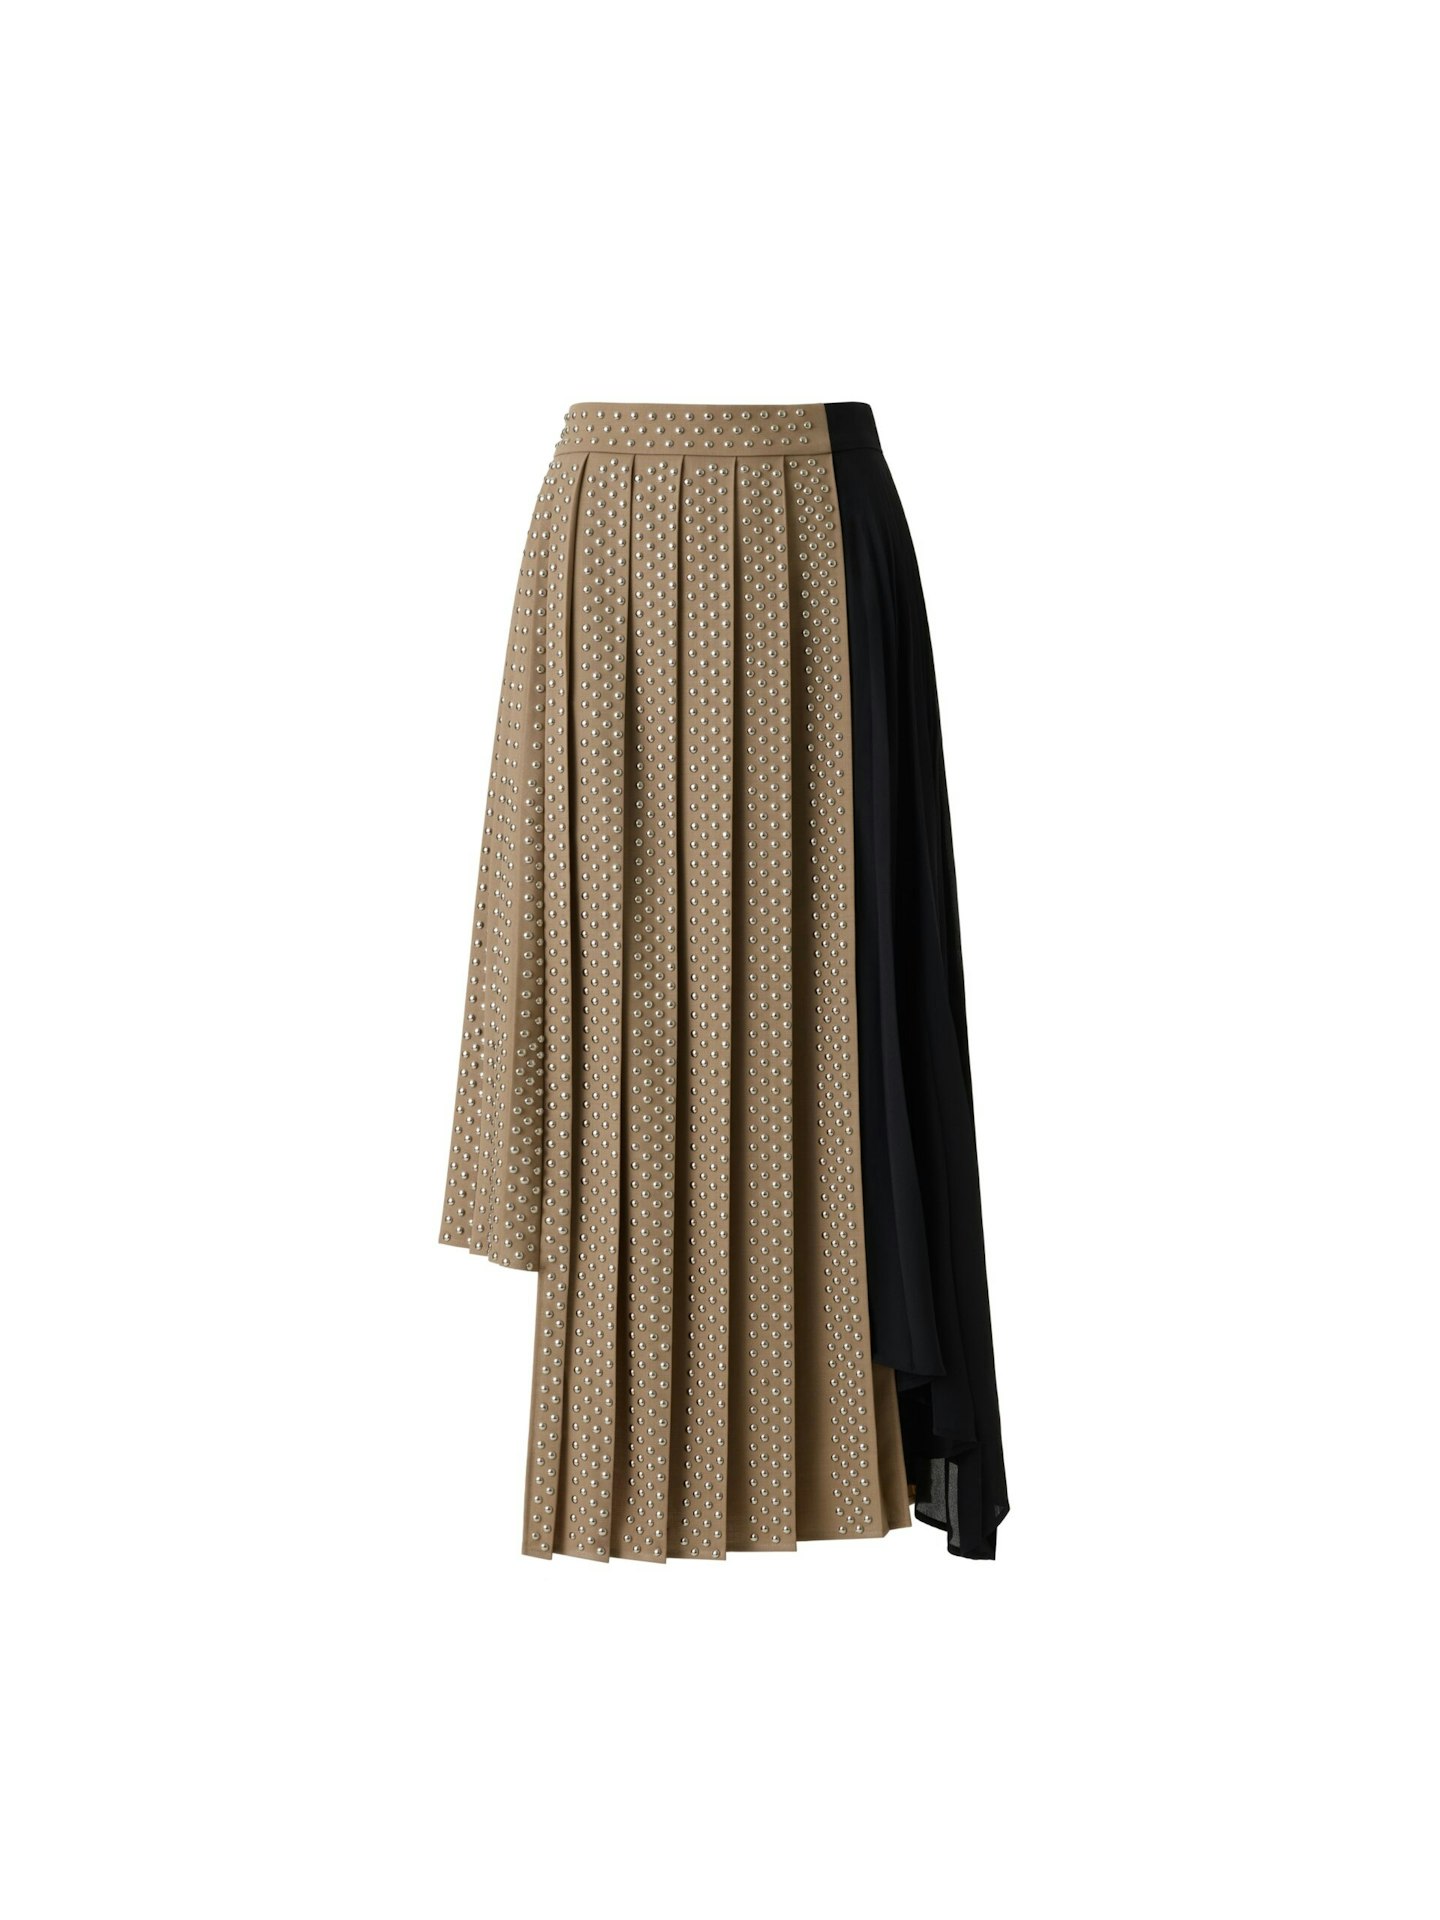 h&m rokh studded skirt 